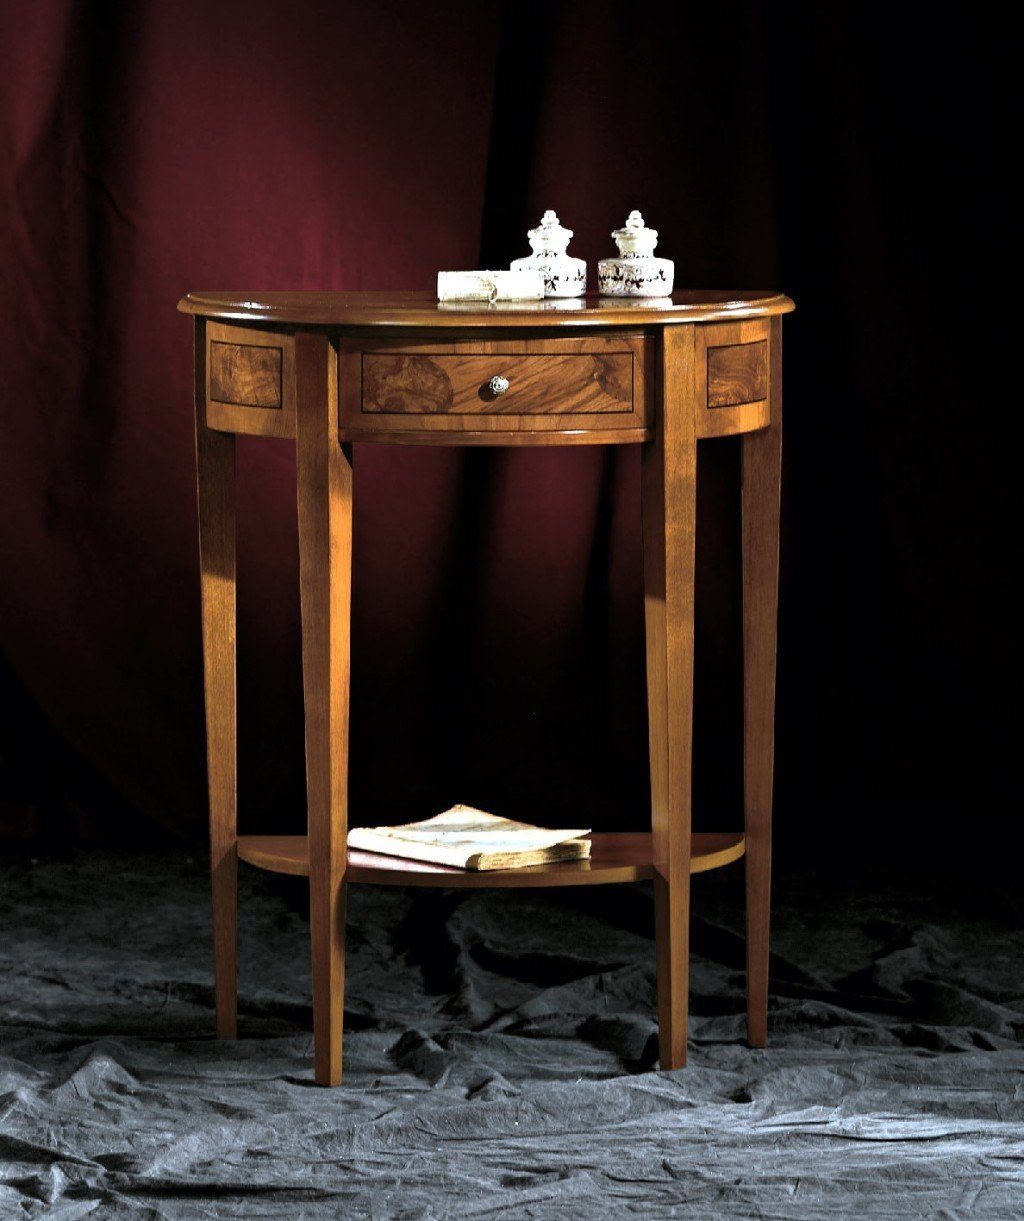 Konsolentisch, Italienische Möbel Holz JVmoebel Couchtisch Konsolentisch Barock Stil Design